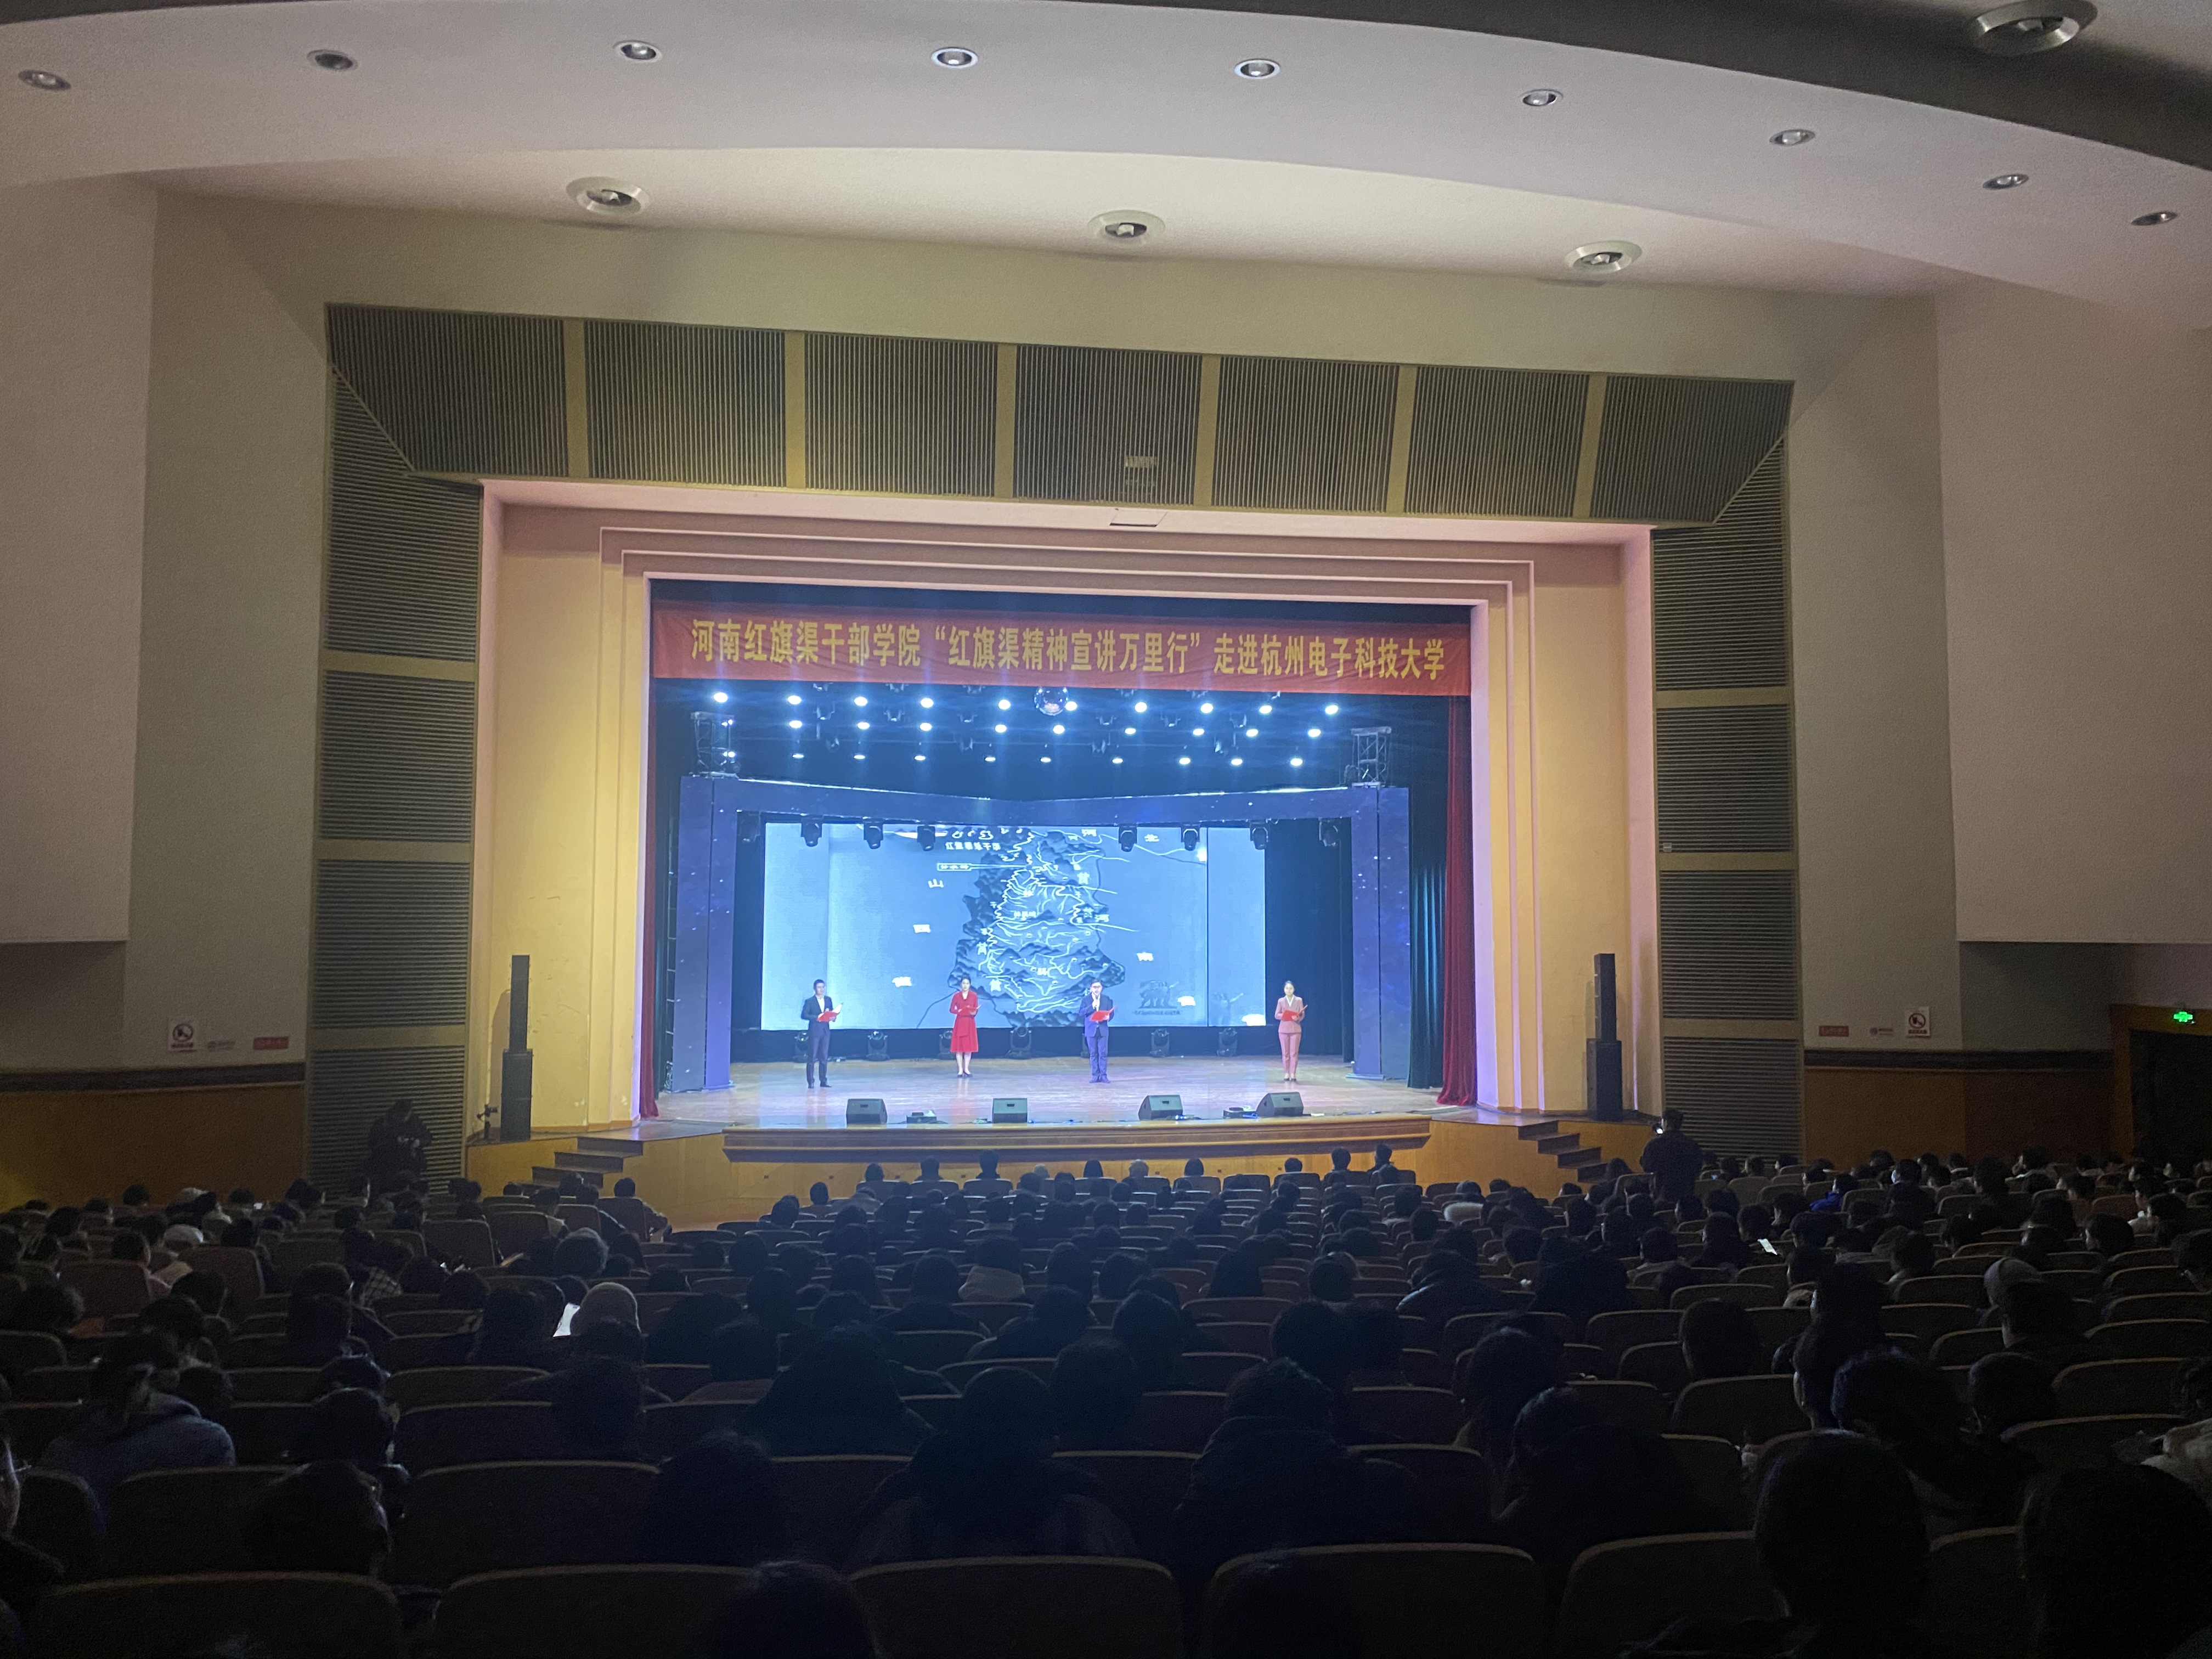 >“红旗渠精神宣讲万里行”活动——看这场情景党课如何在杭州电子科技大学“C位”出圈！